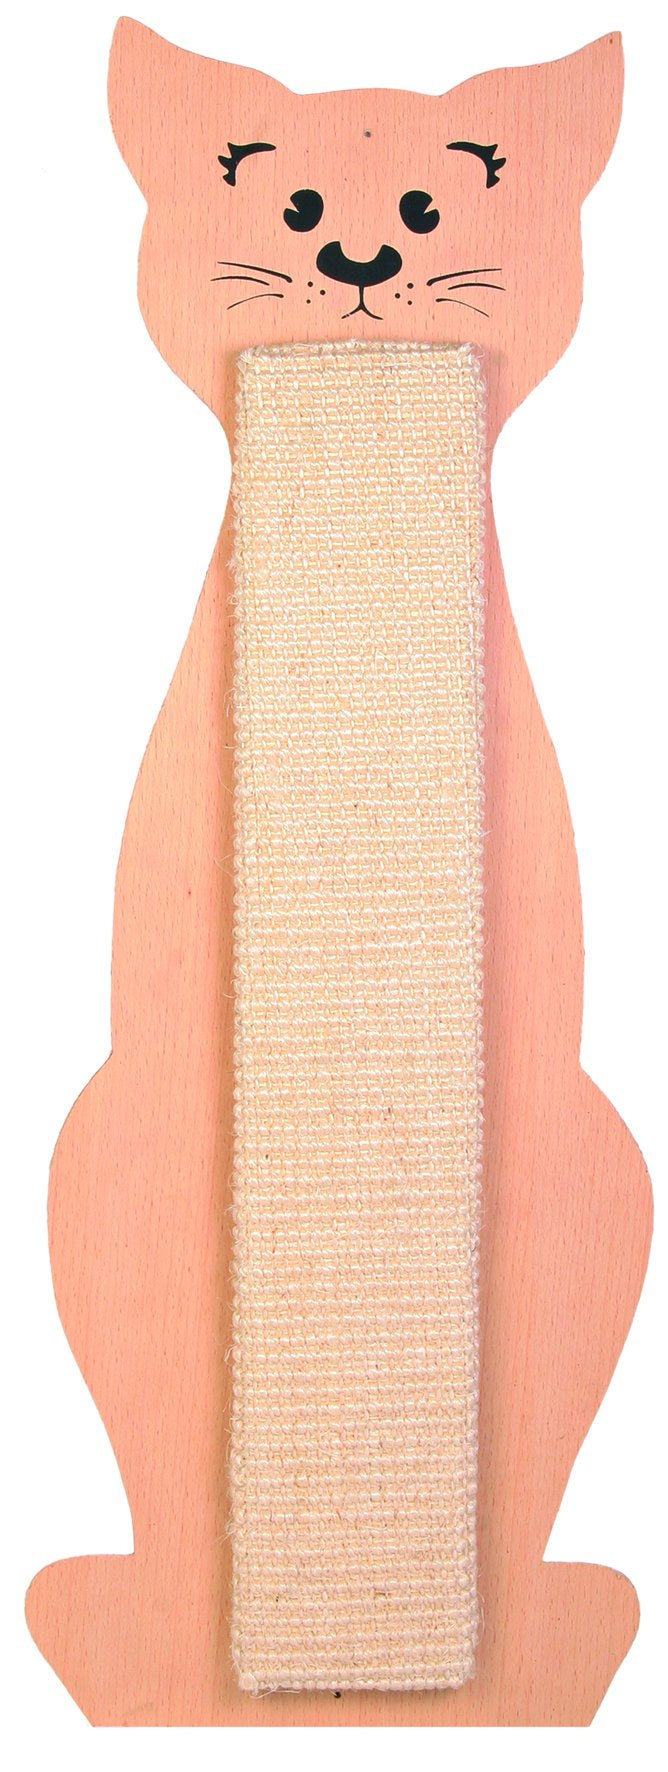 43161 Scratching board, cat shaped, 21 x 58 cm, natural/beige